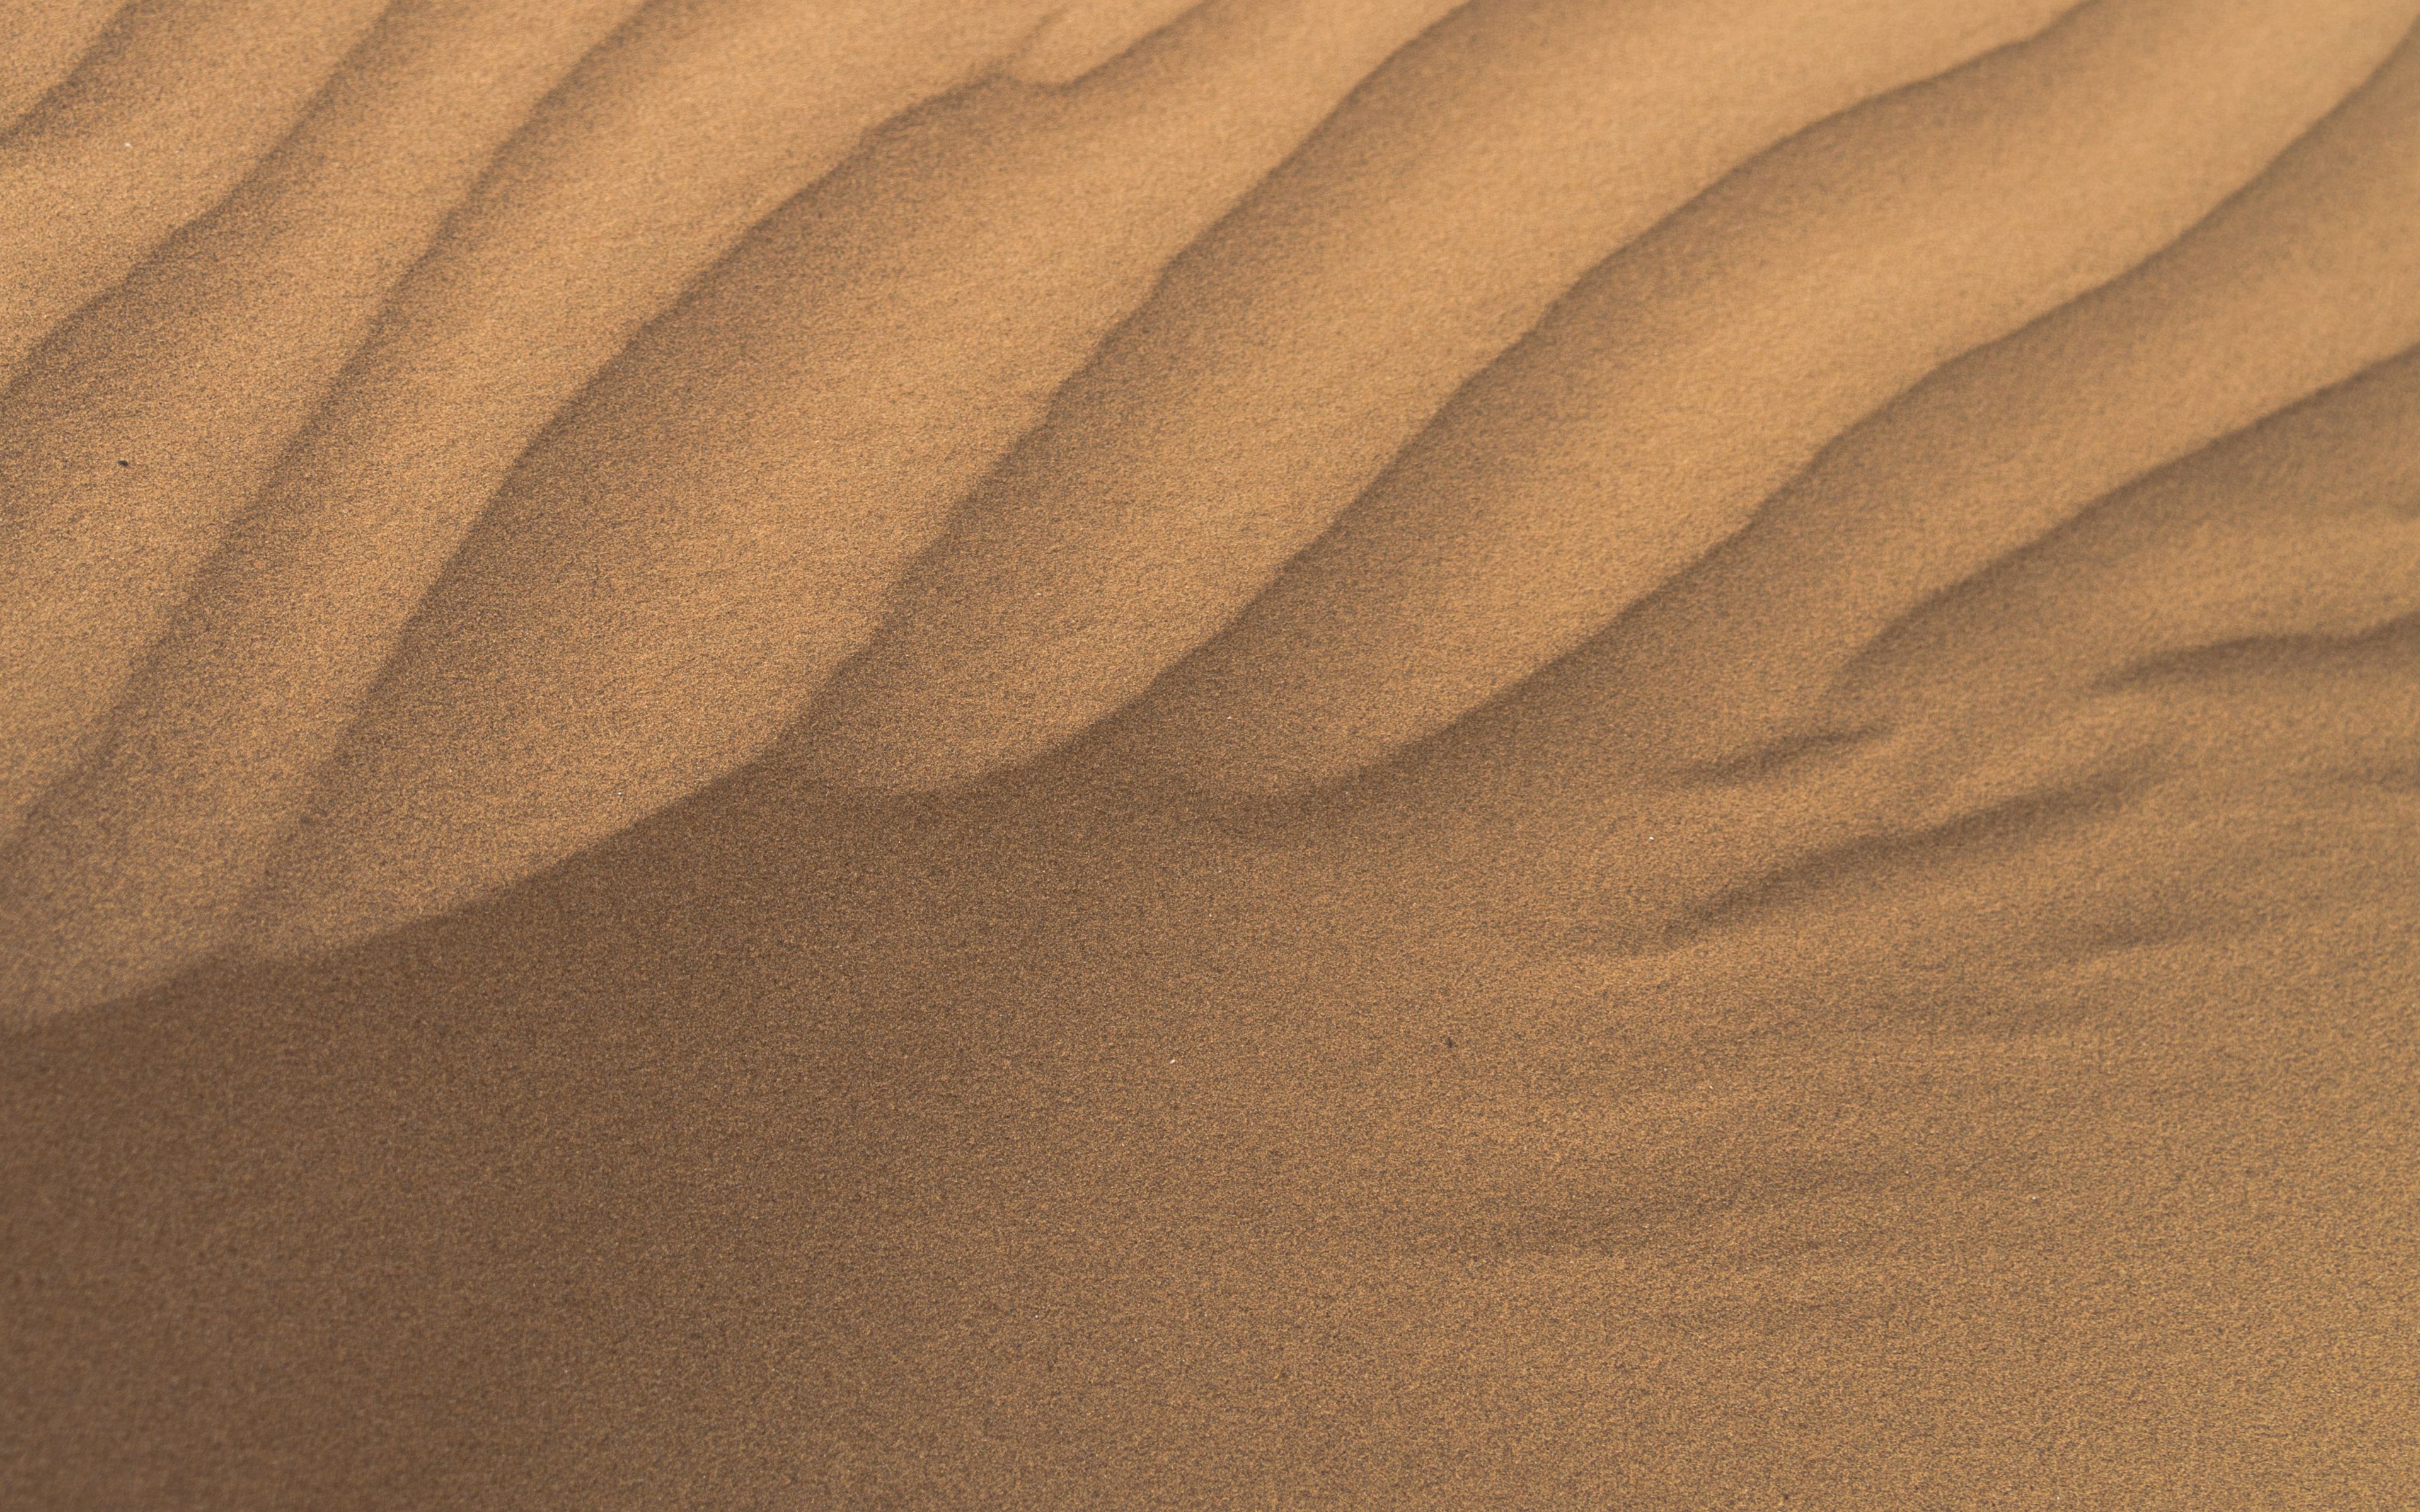 Download Wallpaper 3840x2400 Desert Sand Waves Dunes 4k Ultra Hd 16